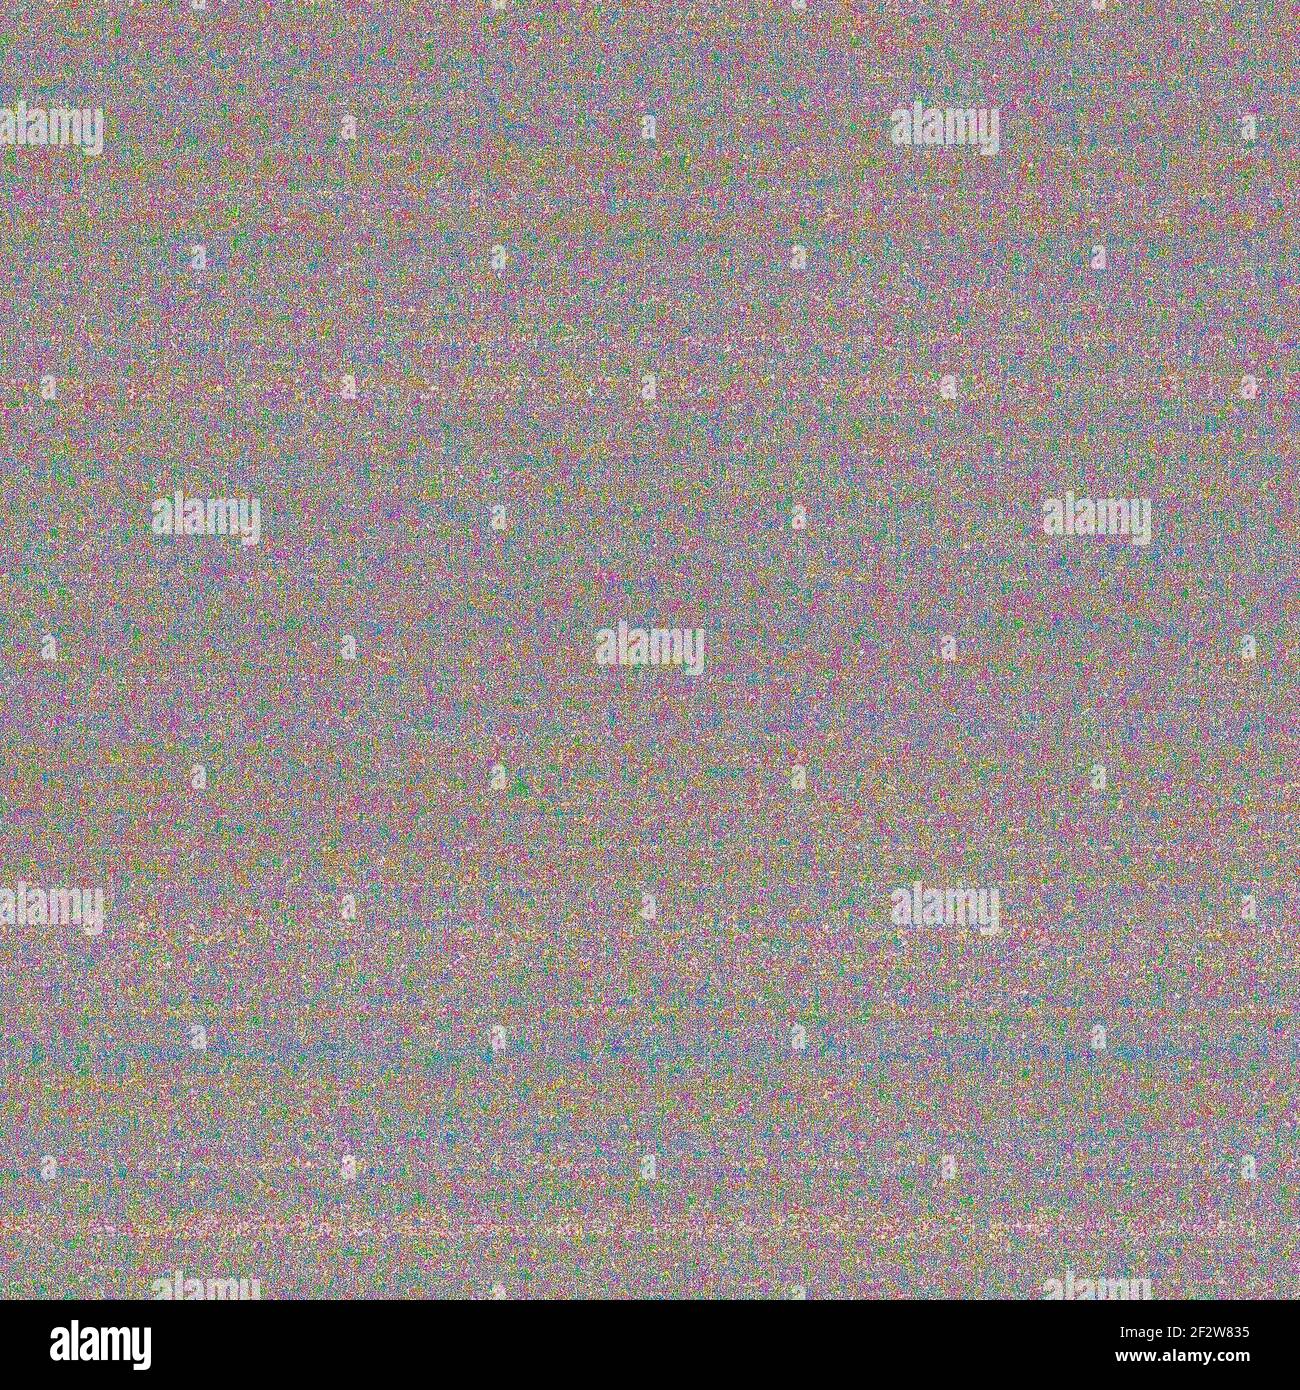 Foto di rumore colorato. Strati di pixel multicolore casuali, un motivo a grana grossa. Problemi di esposizione in fotografia. Foto Stock